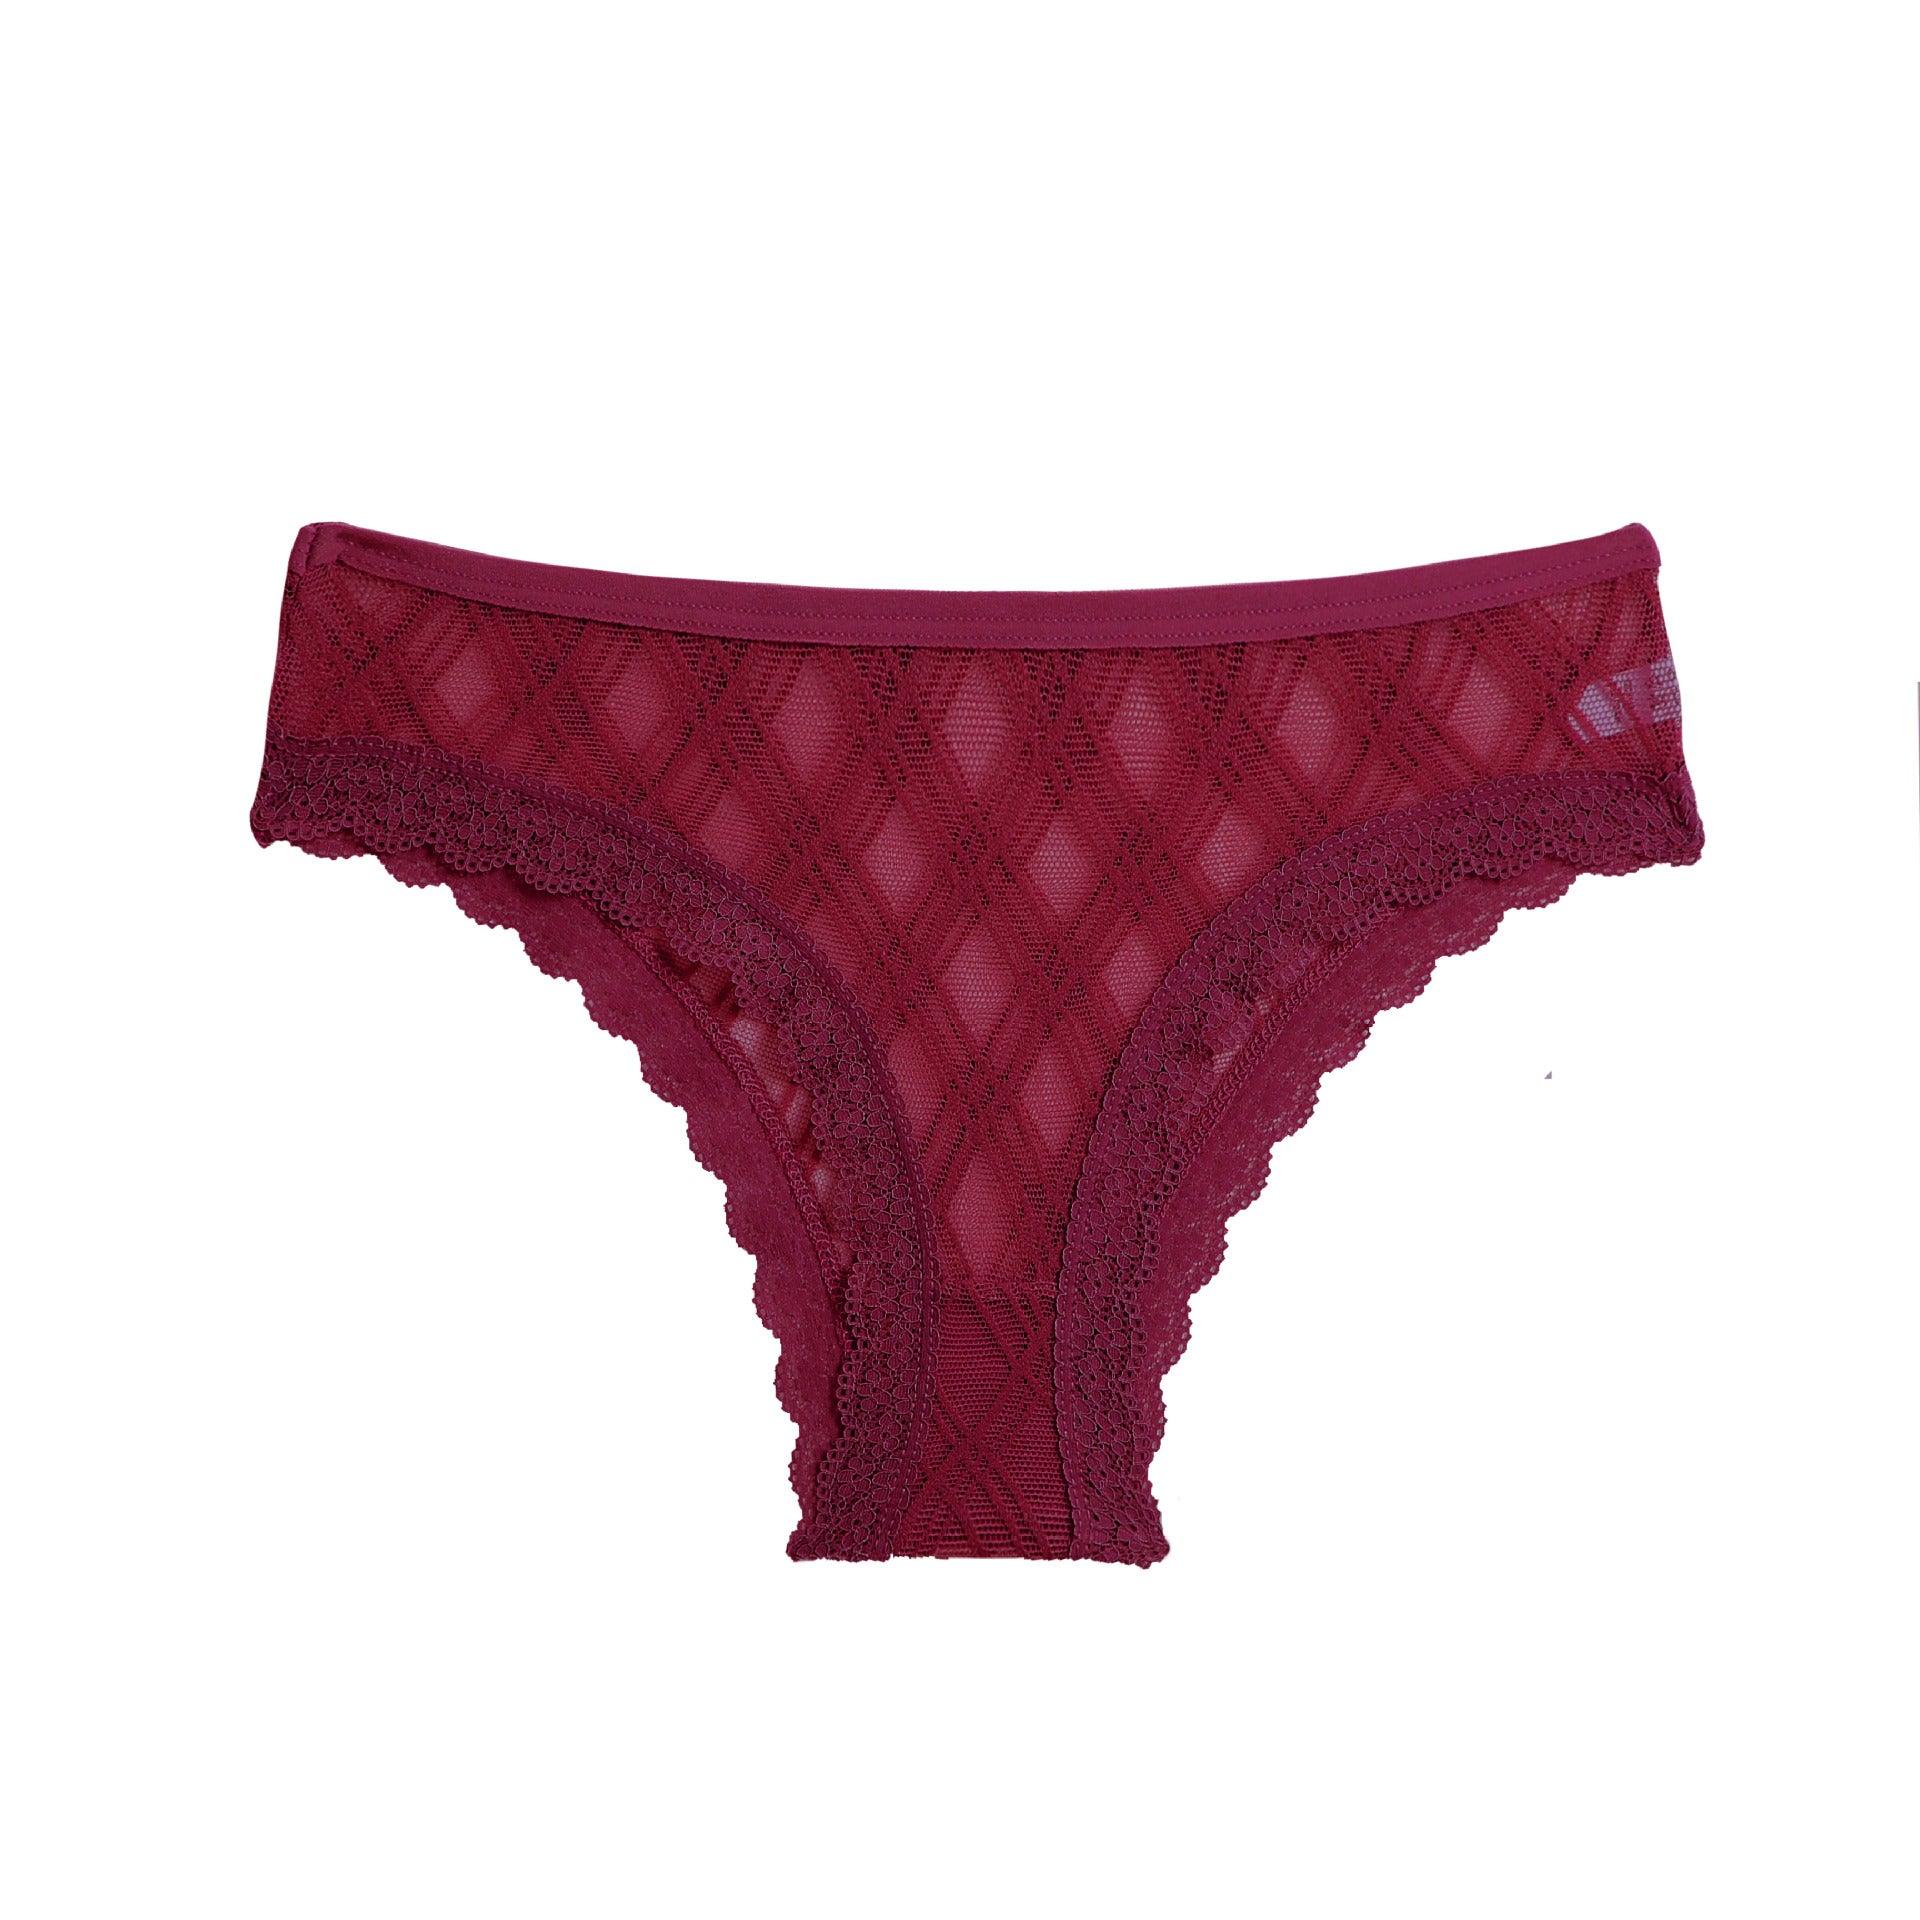 Women's Mesh Lace Stitching Brazilian Panties - ForVanity underwear, women's lingerie Underwear